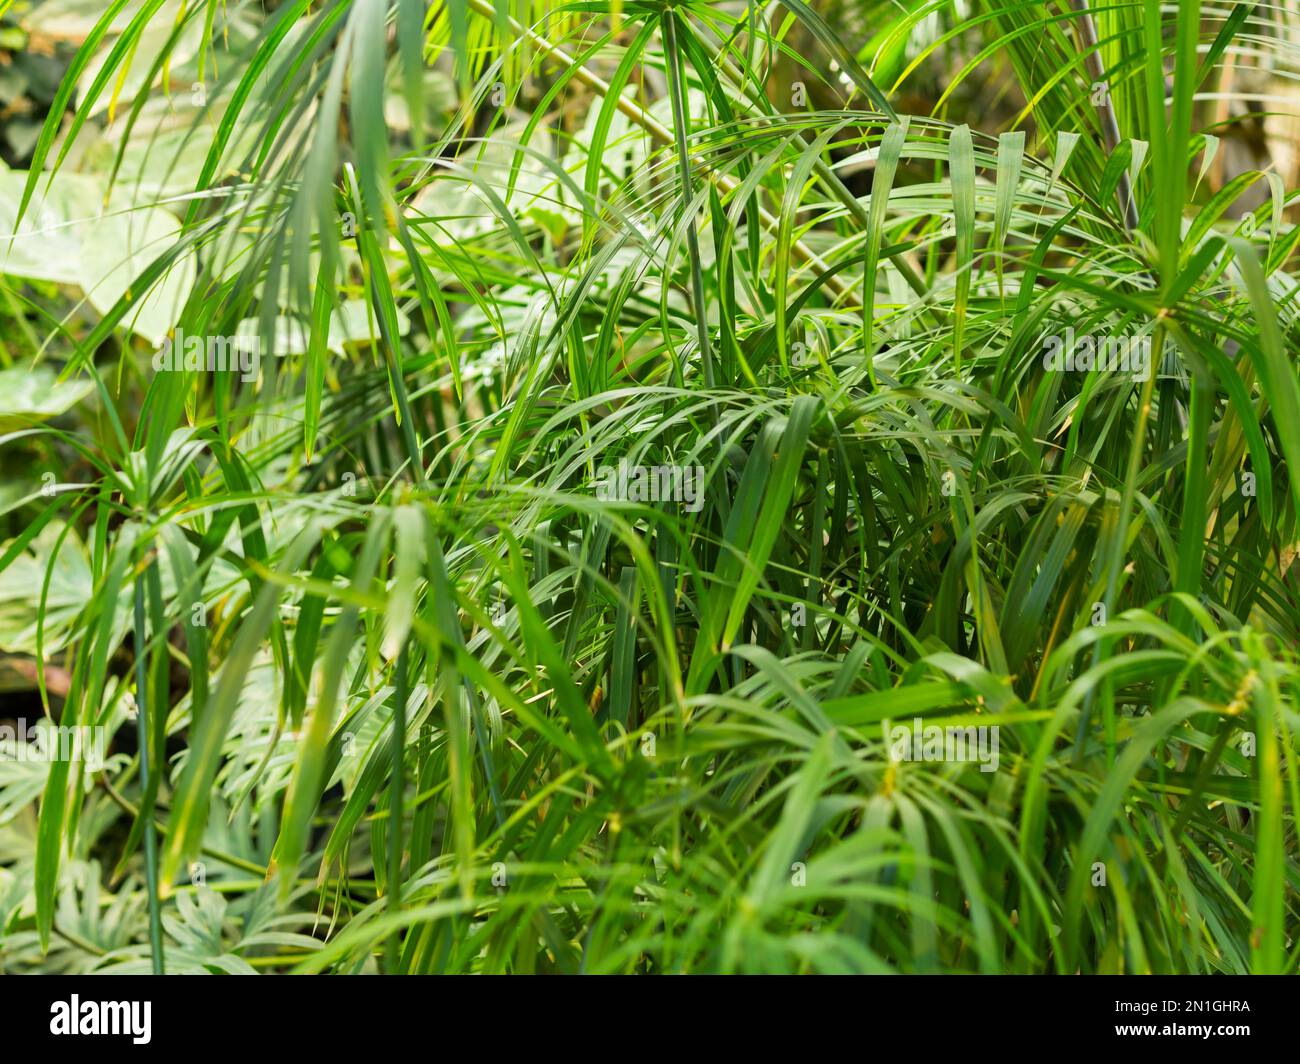 Vollgerahmtes Foto von Cyperus alternifolius, Schirmpapyrus, Schirmseide oder Schirmpalme. Grünes Laub einer grasähnlichen Pflanze. Stockfoto